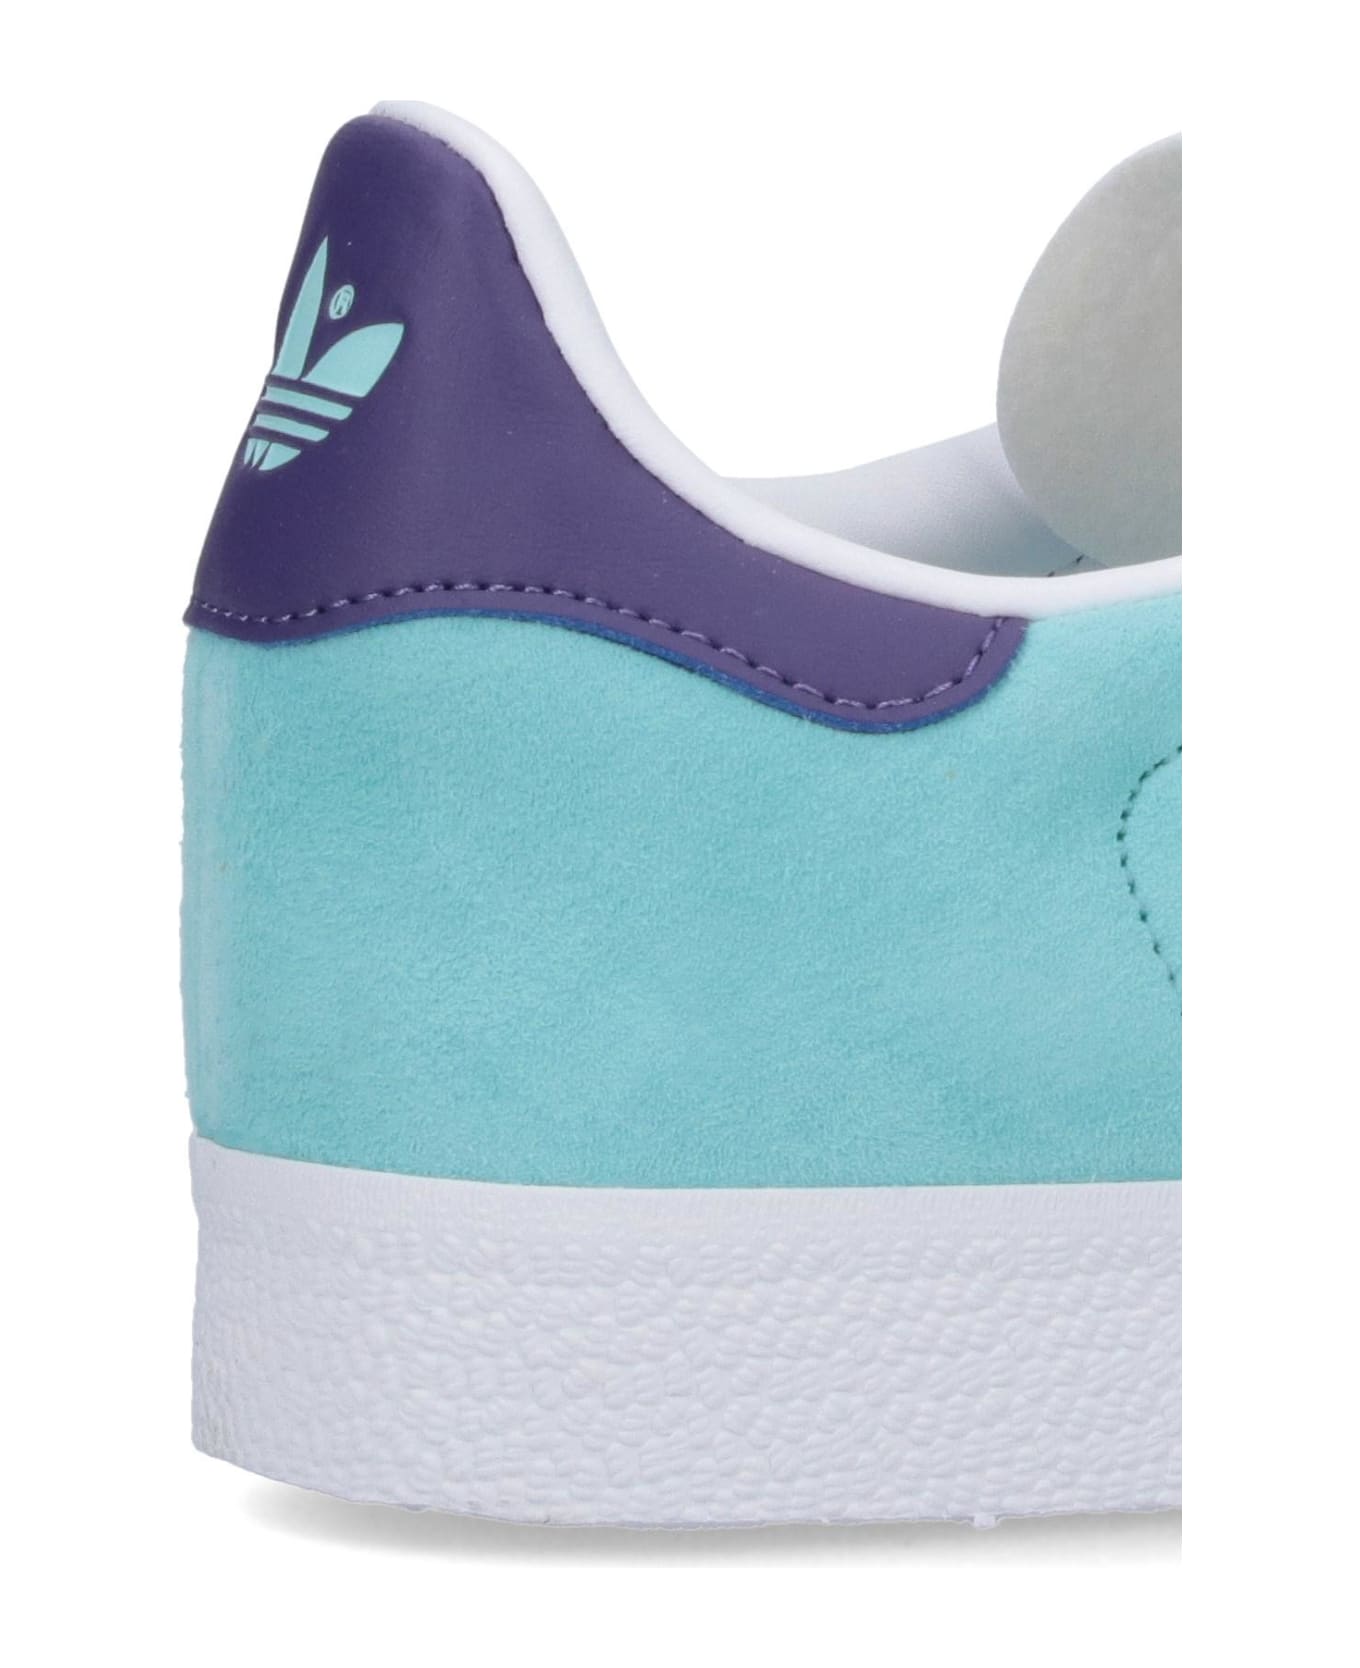 Adidas Originals Gazelle Sneakers - Light Blue スニーカー